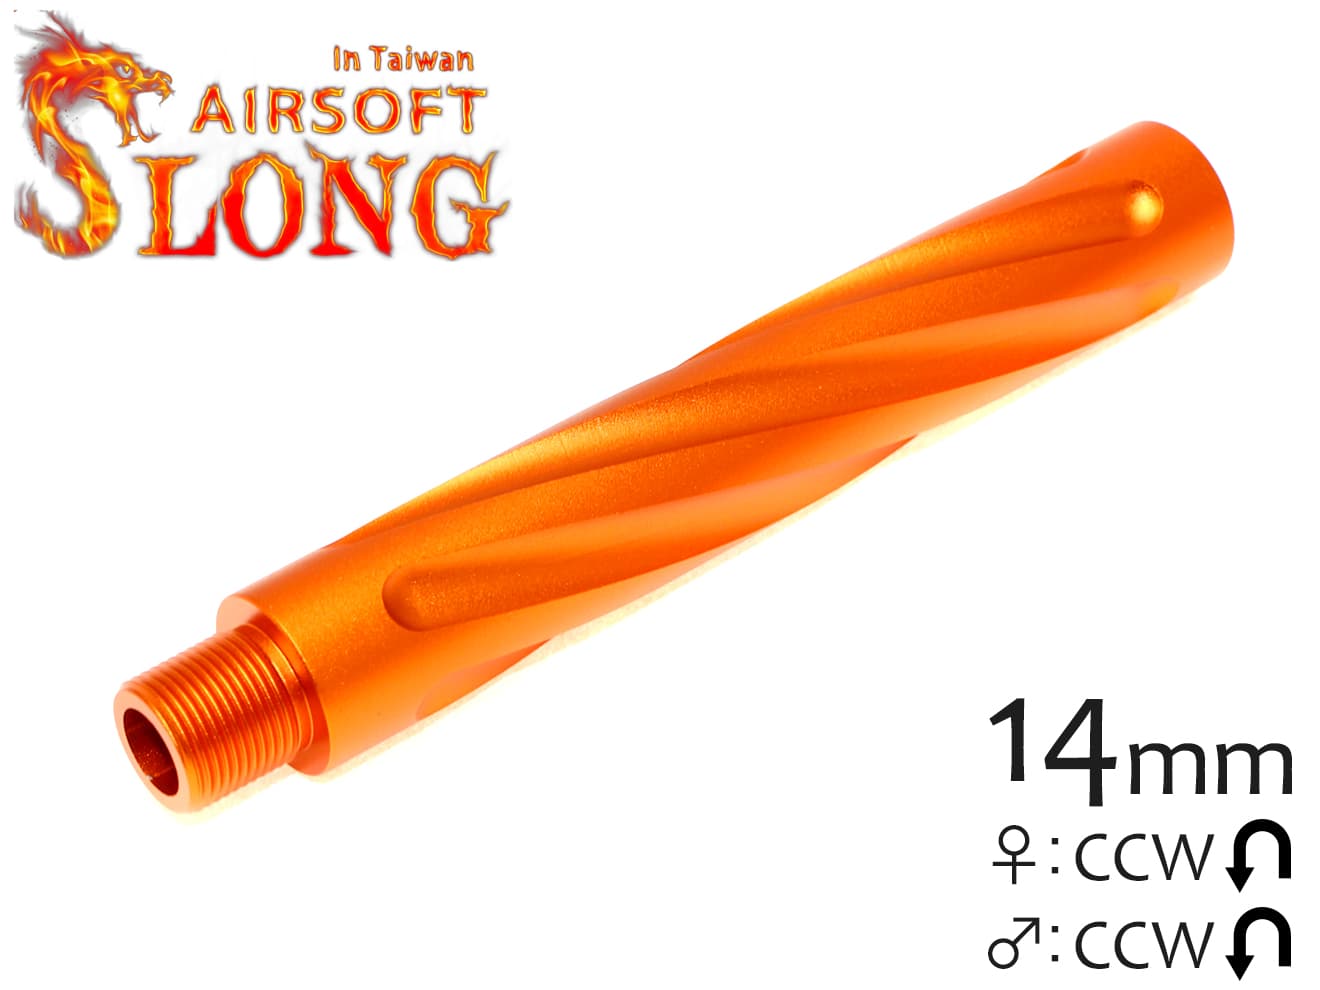 SLONG AIRSOFT 117mm アウターバレルエクステンション スパイラルフルート 14mm逆ネジ [カラー：ブラック / オレンジ / ゴールド]